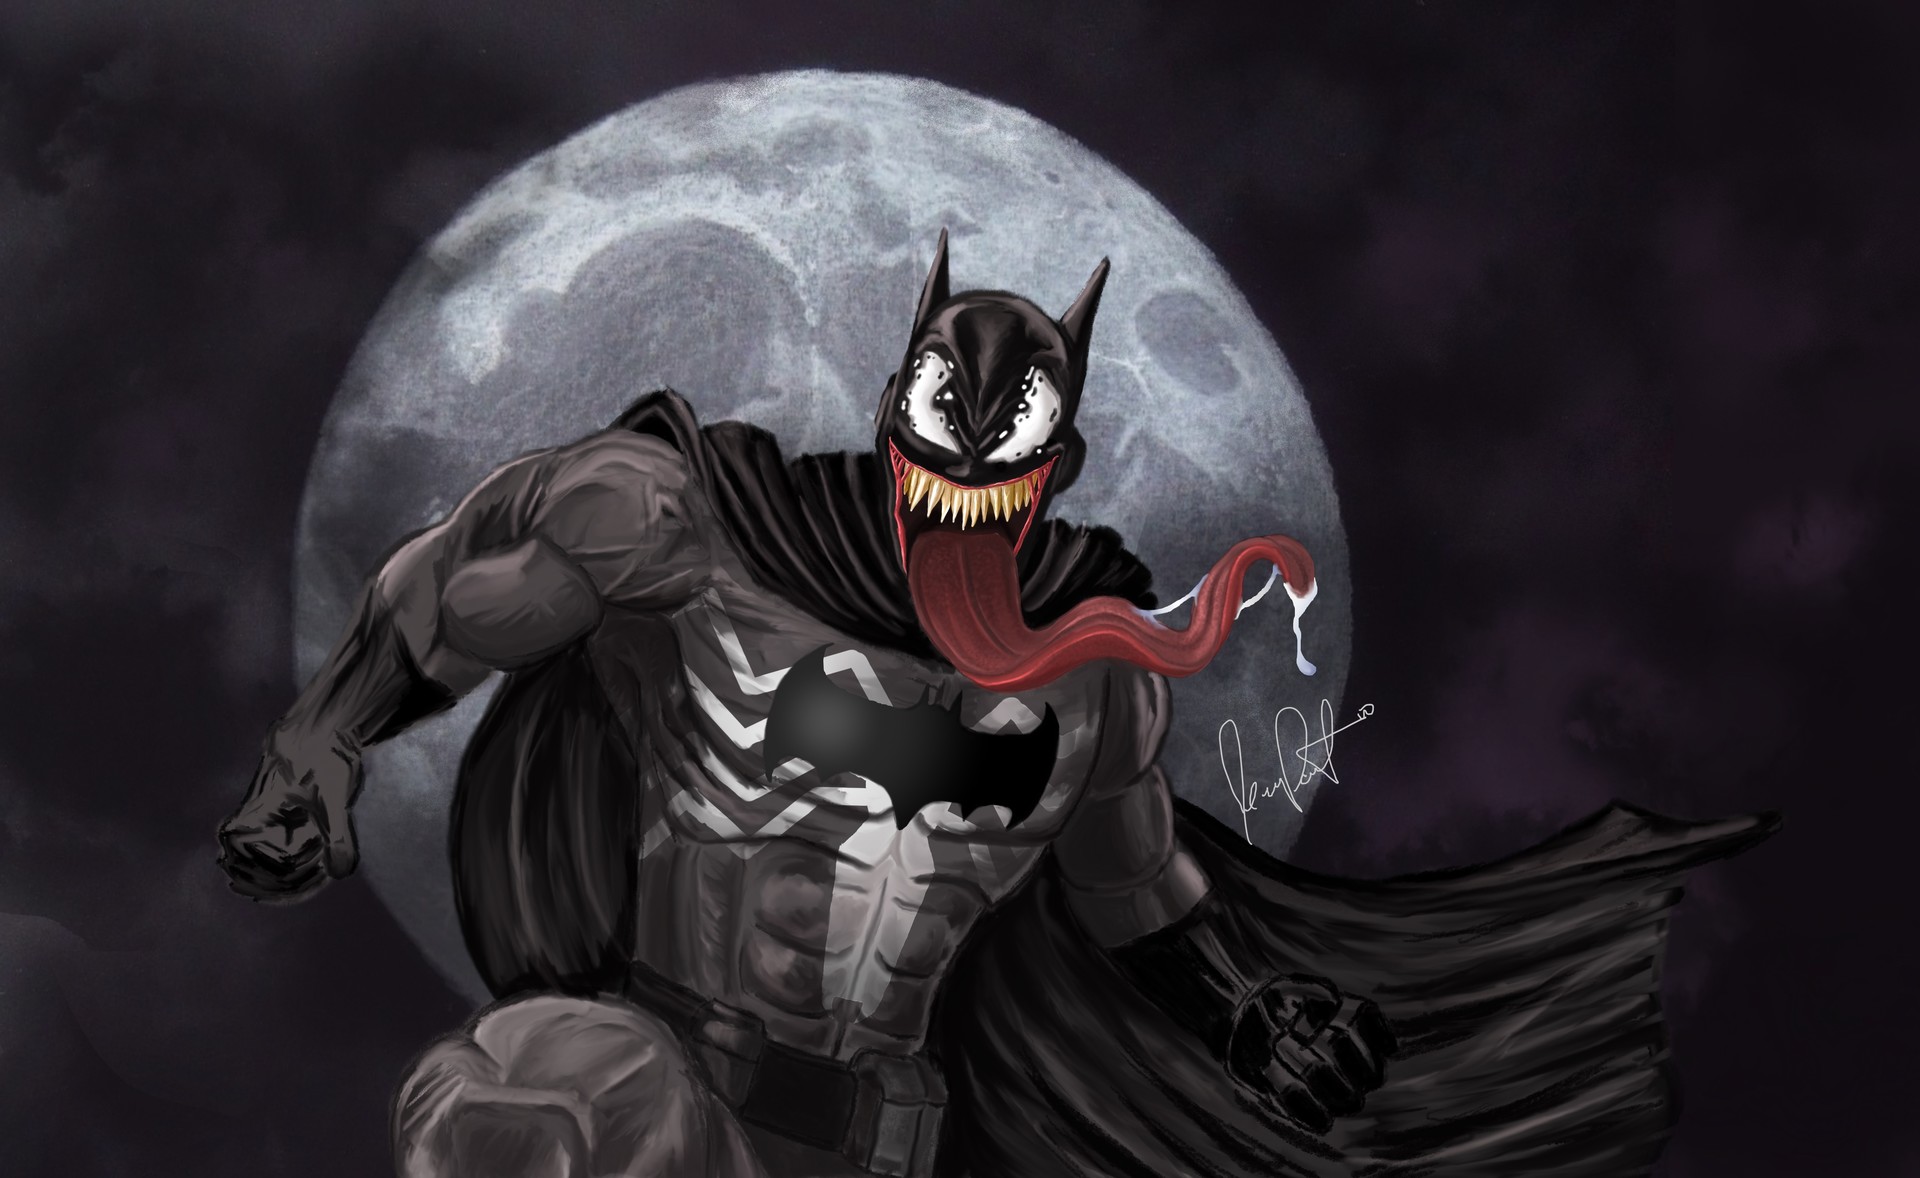 Jean Paul T. Alonso - BatVenom (Batman/Venom Mash Up)